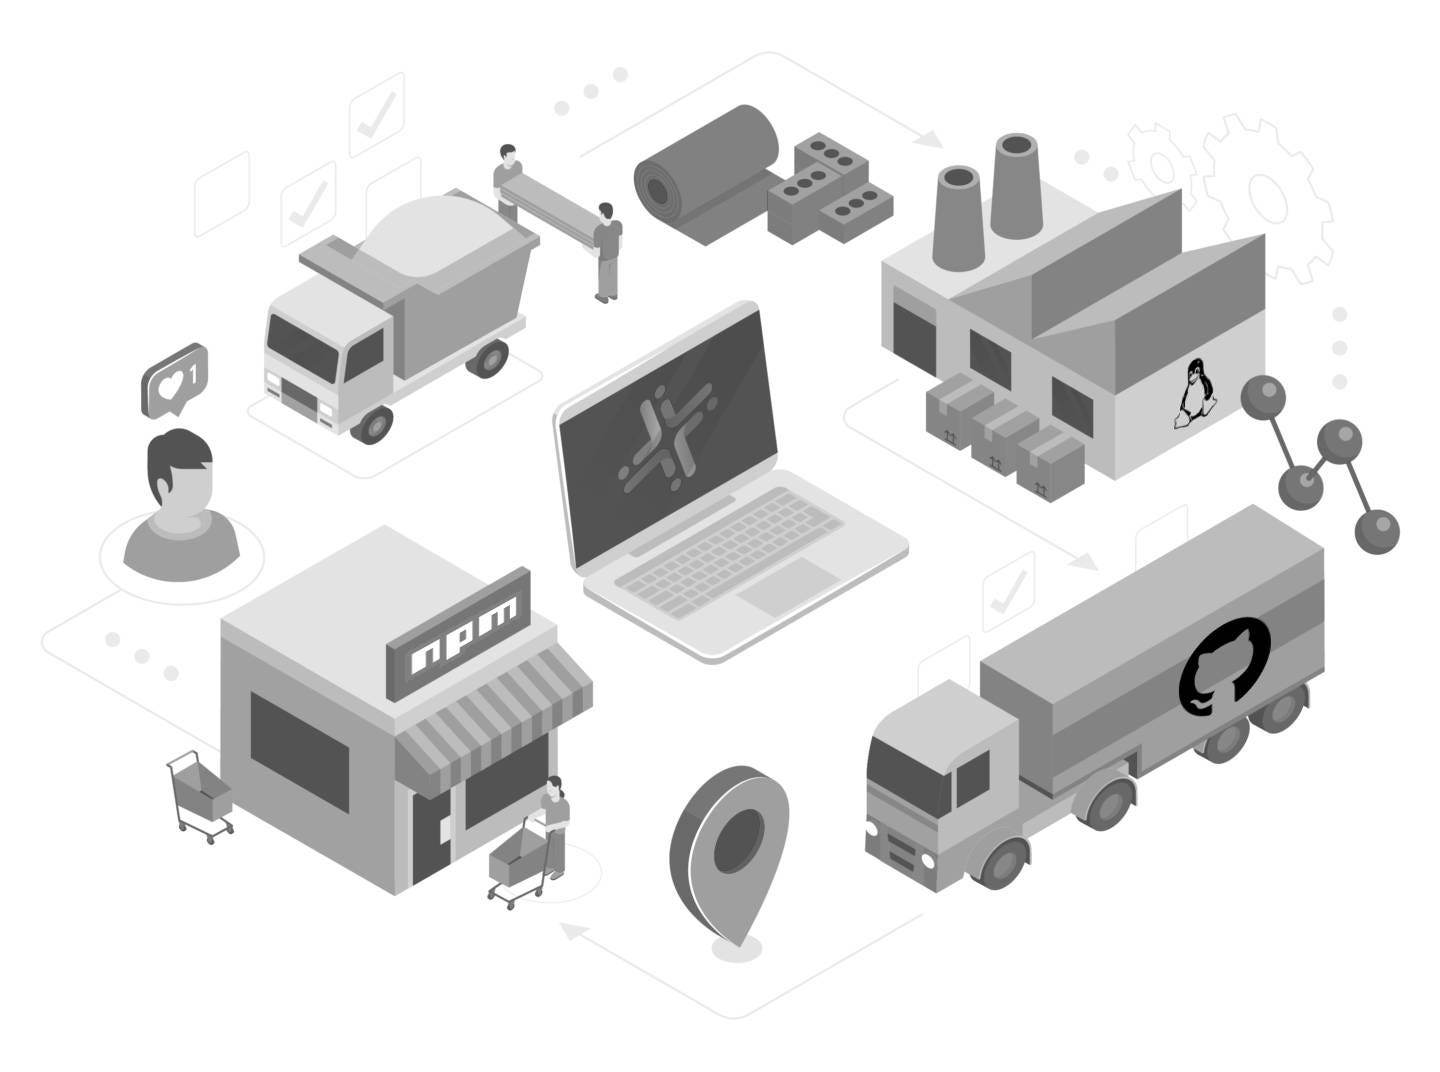 Uma ilustração mostrando uma cadeia de mantimentos com logo do NPM, GitHub e Linux